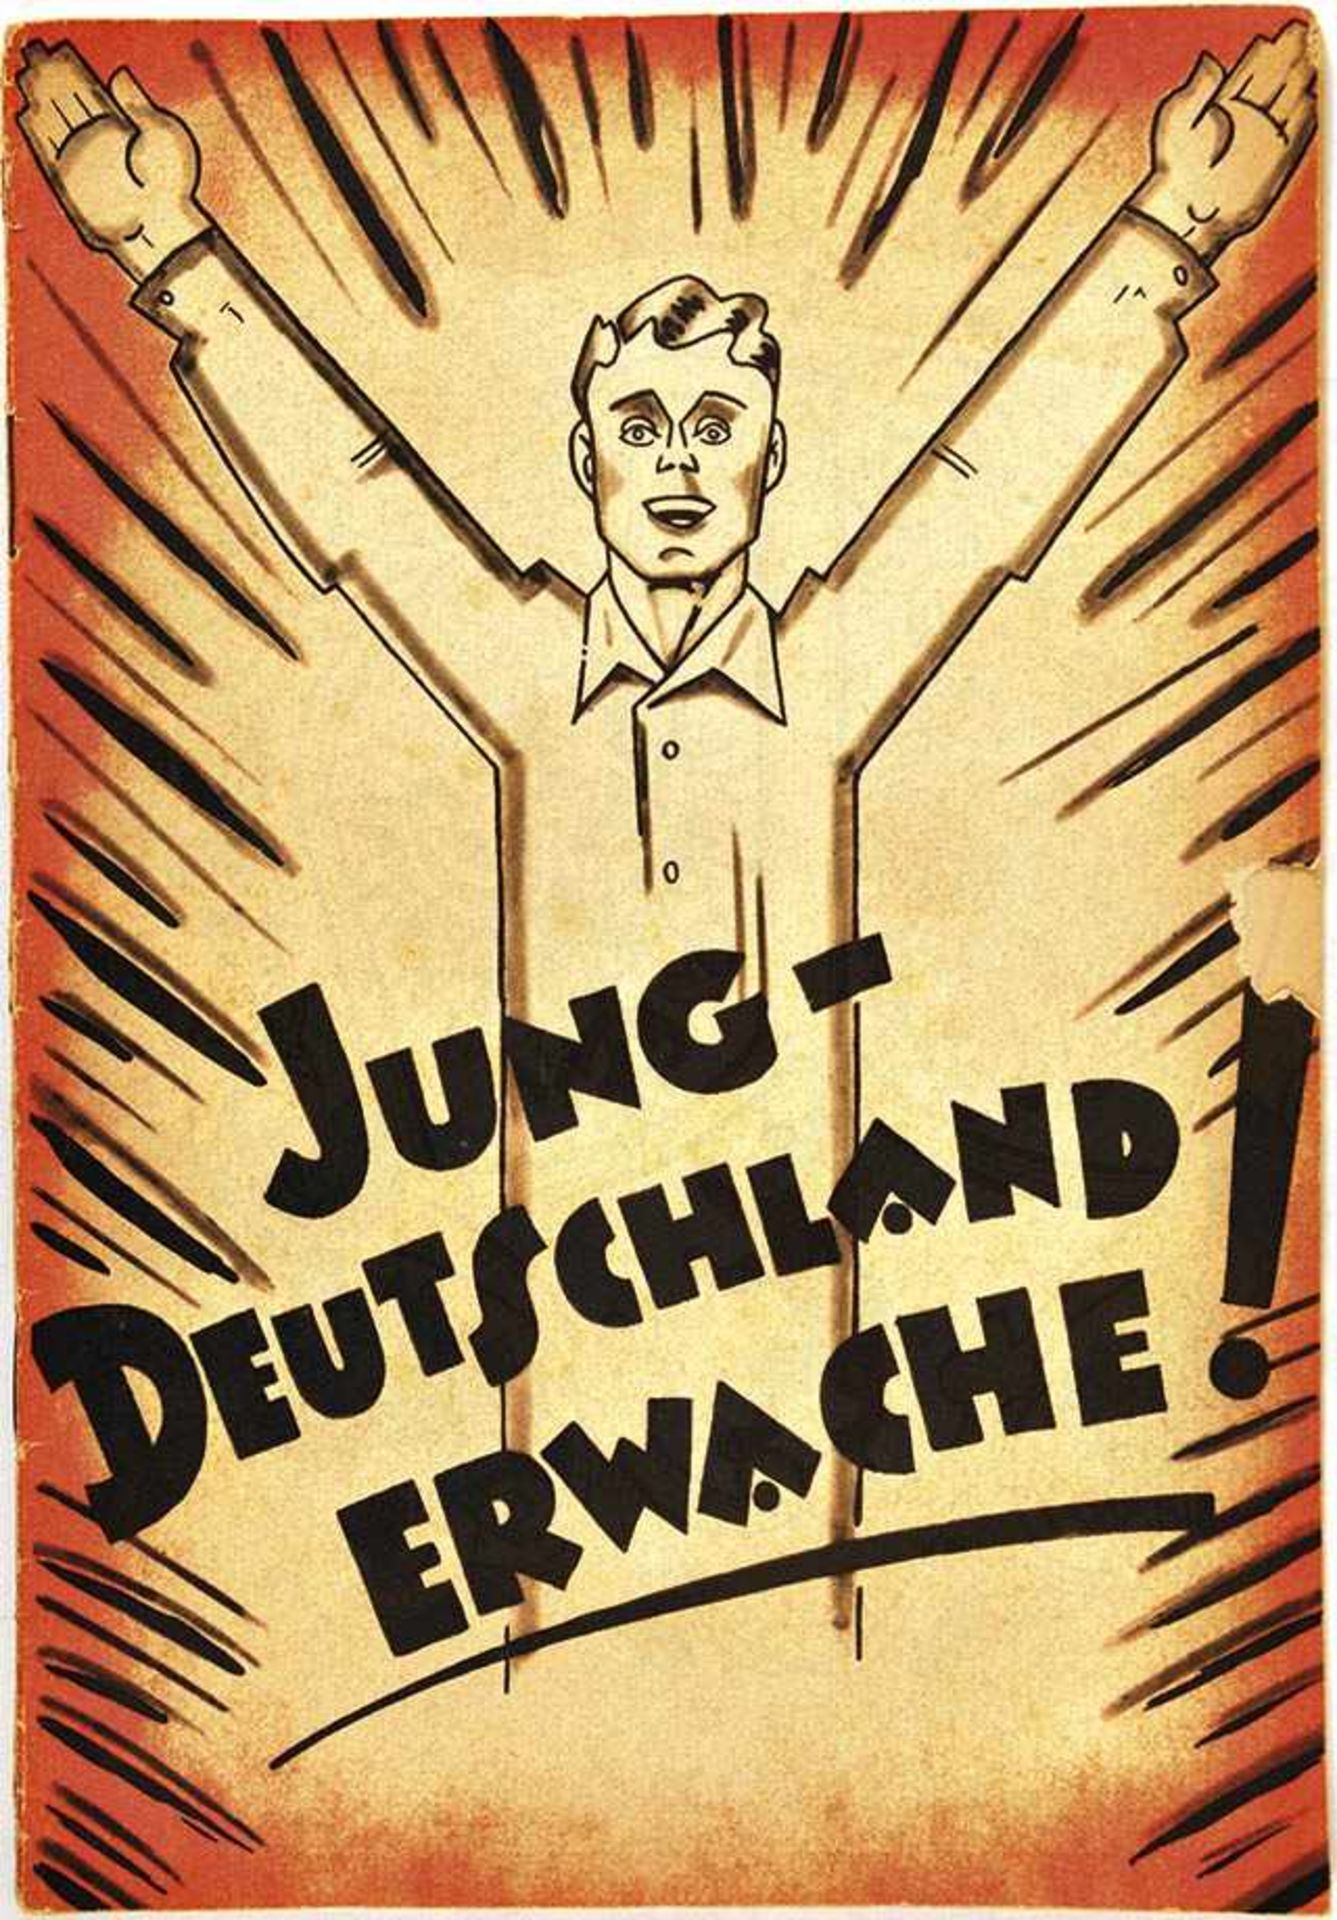 JUNG-DEUTSCHLAND ERWACHE!, Gilde-V., Köln um 1931, zahlr. Fotos, 32 S., farb. Broschur, Titel m.